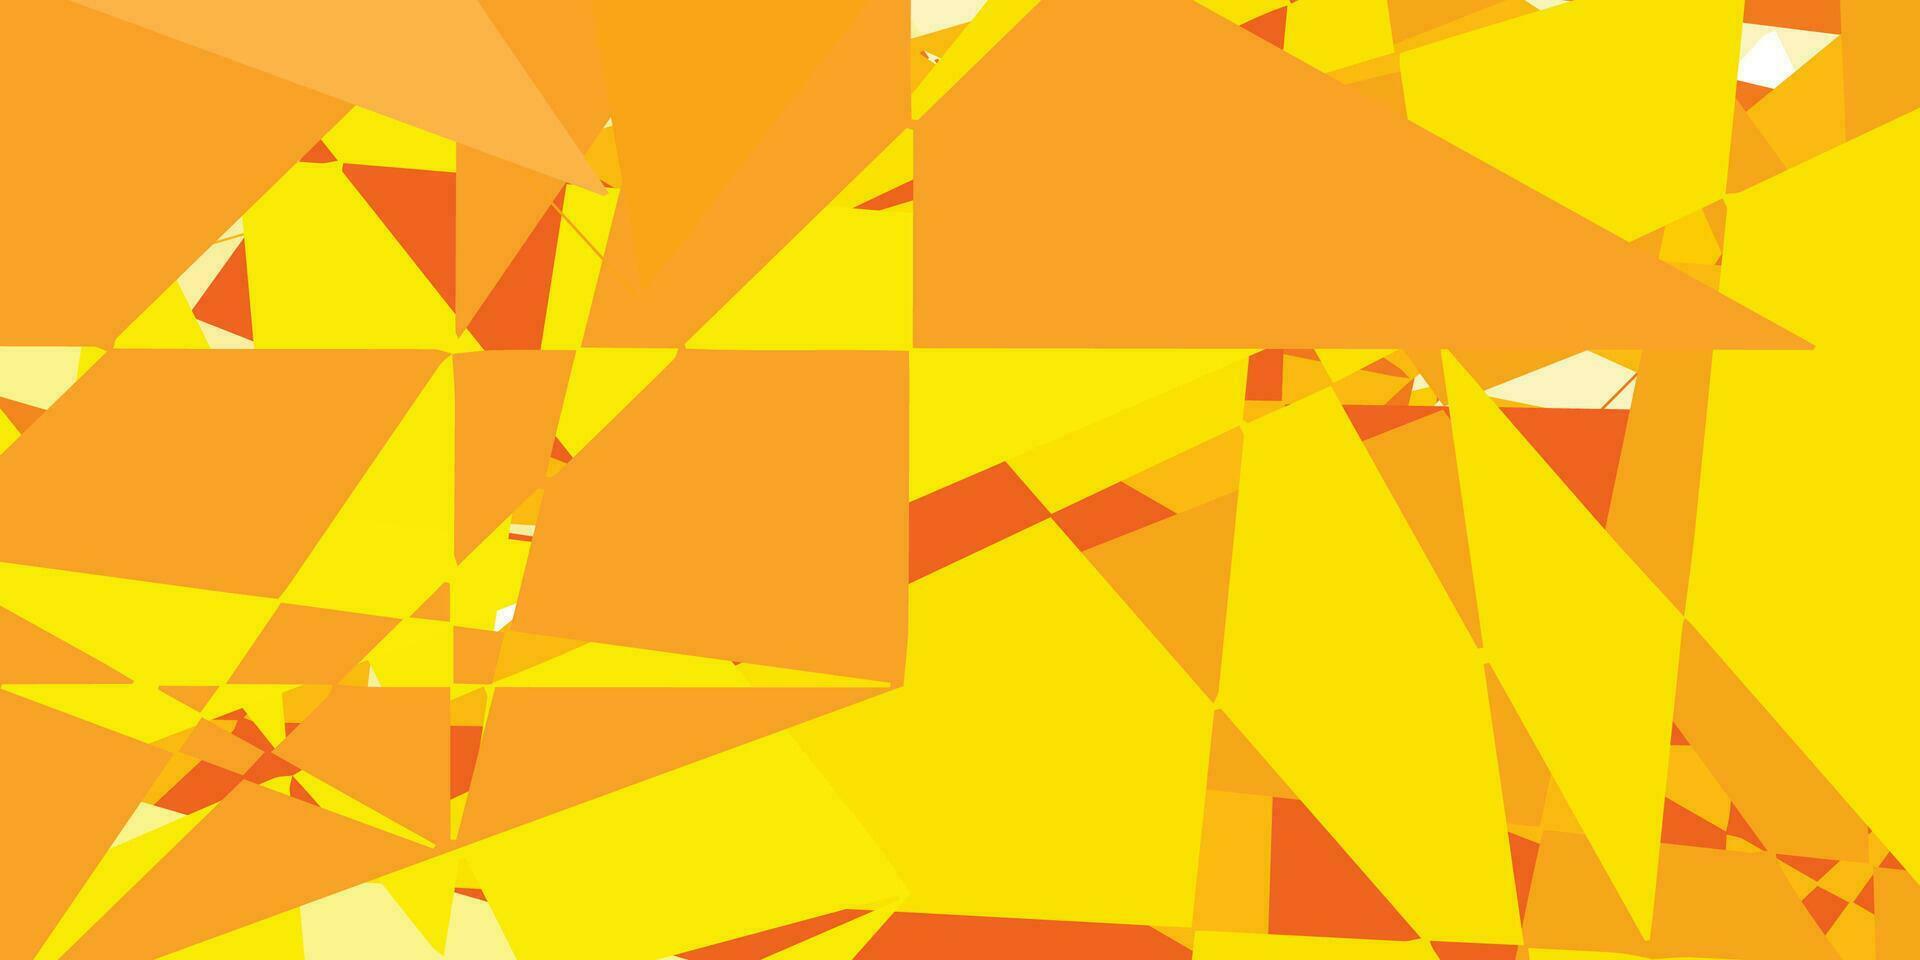 fond de vecteur orange clair avec des formes polygonales.